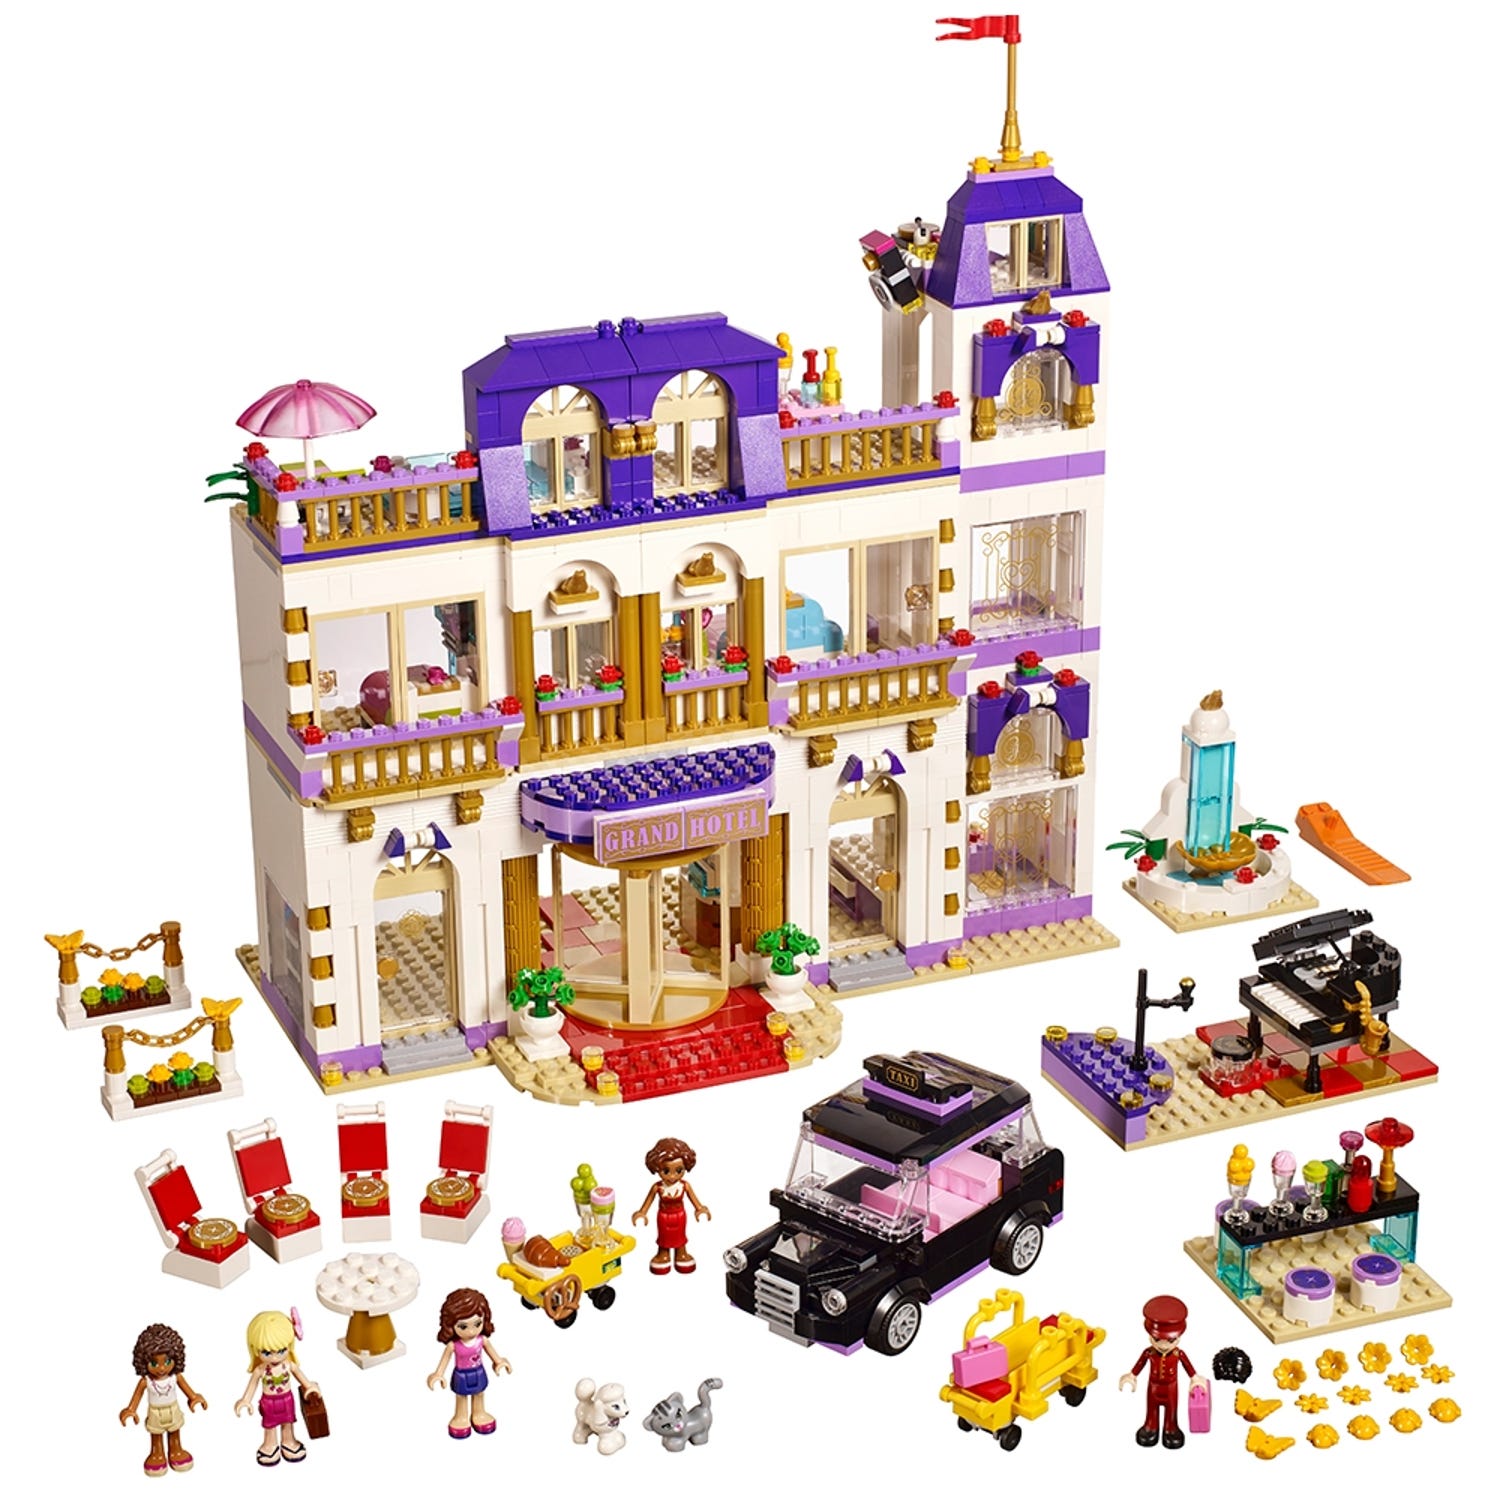 하트레이크 그랜드 호텔 41101 | 프렌즈 | Lego® Shop Kr